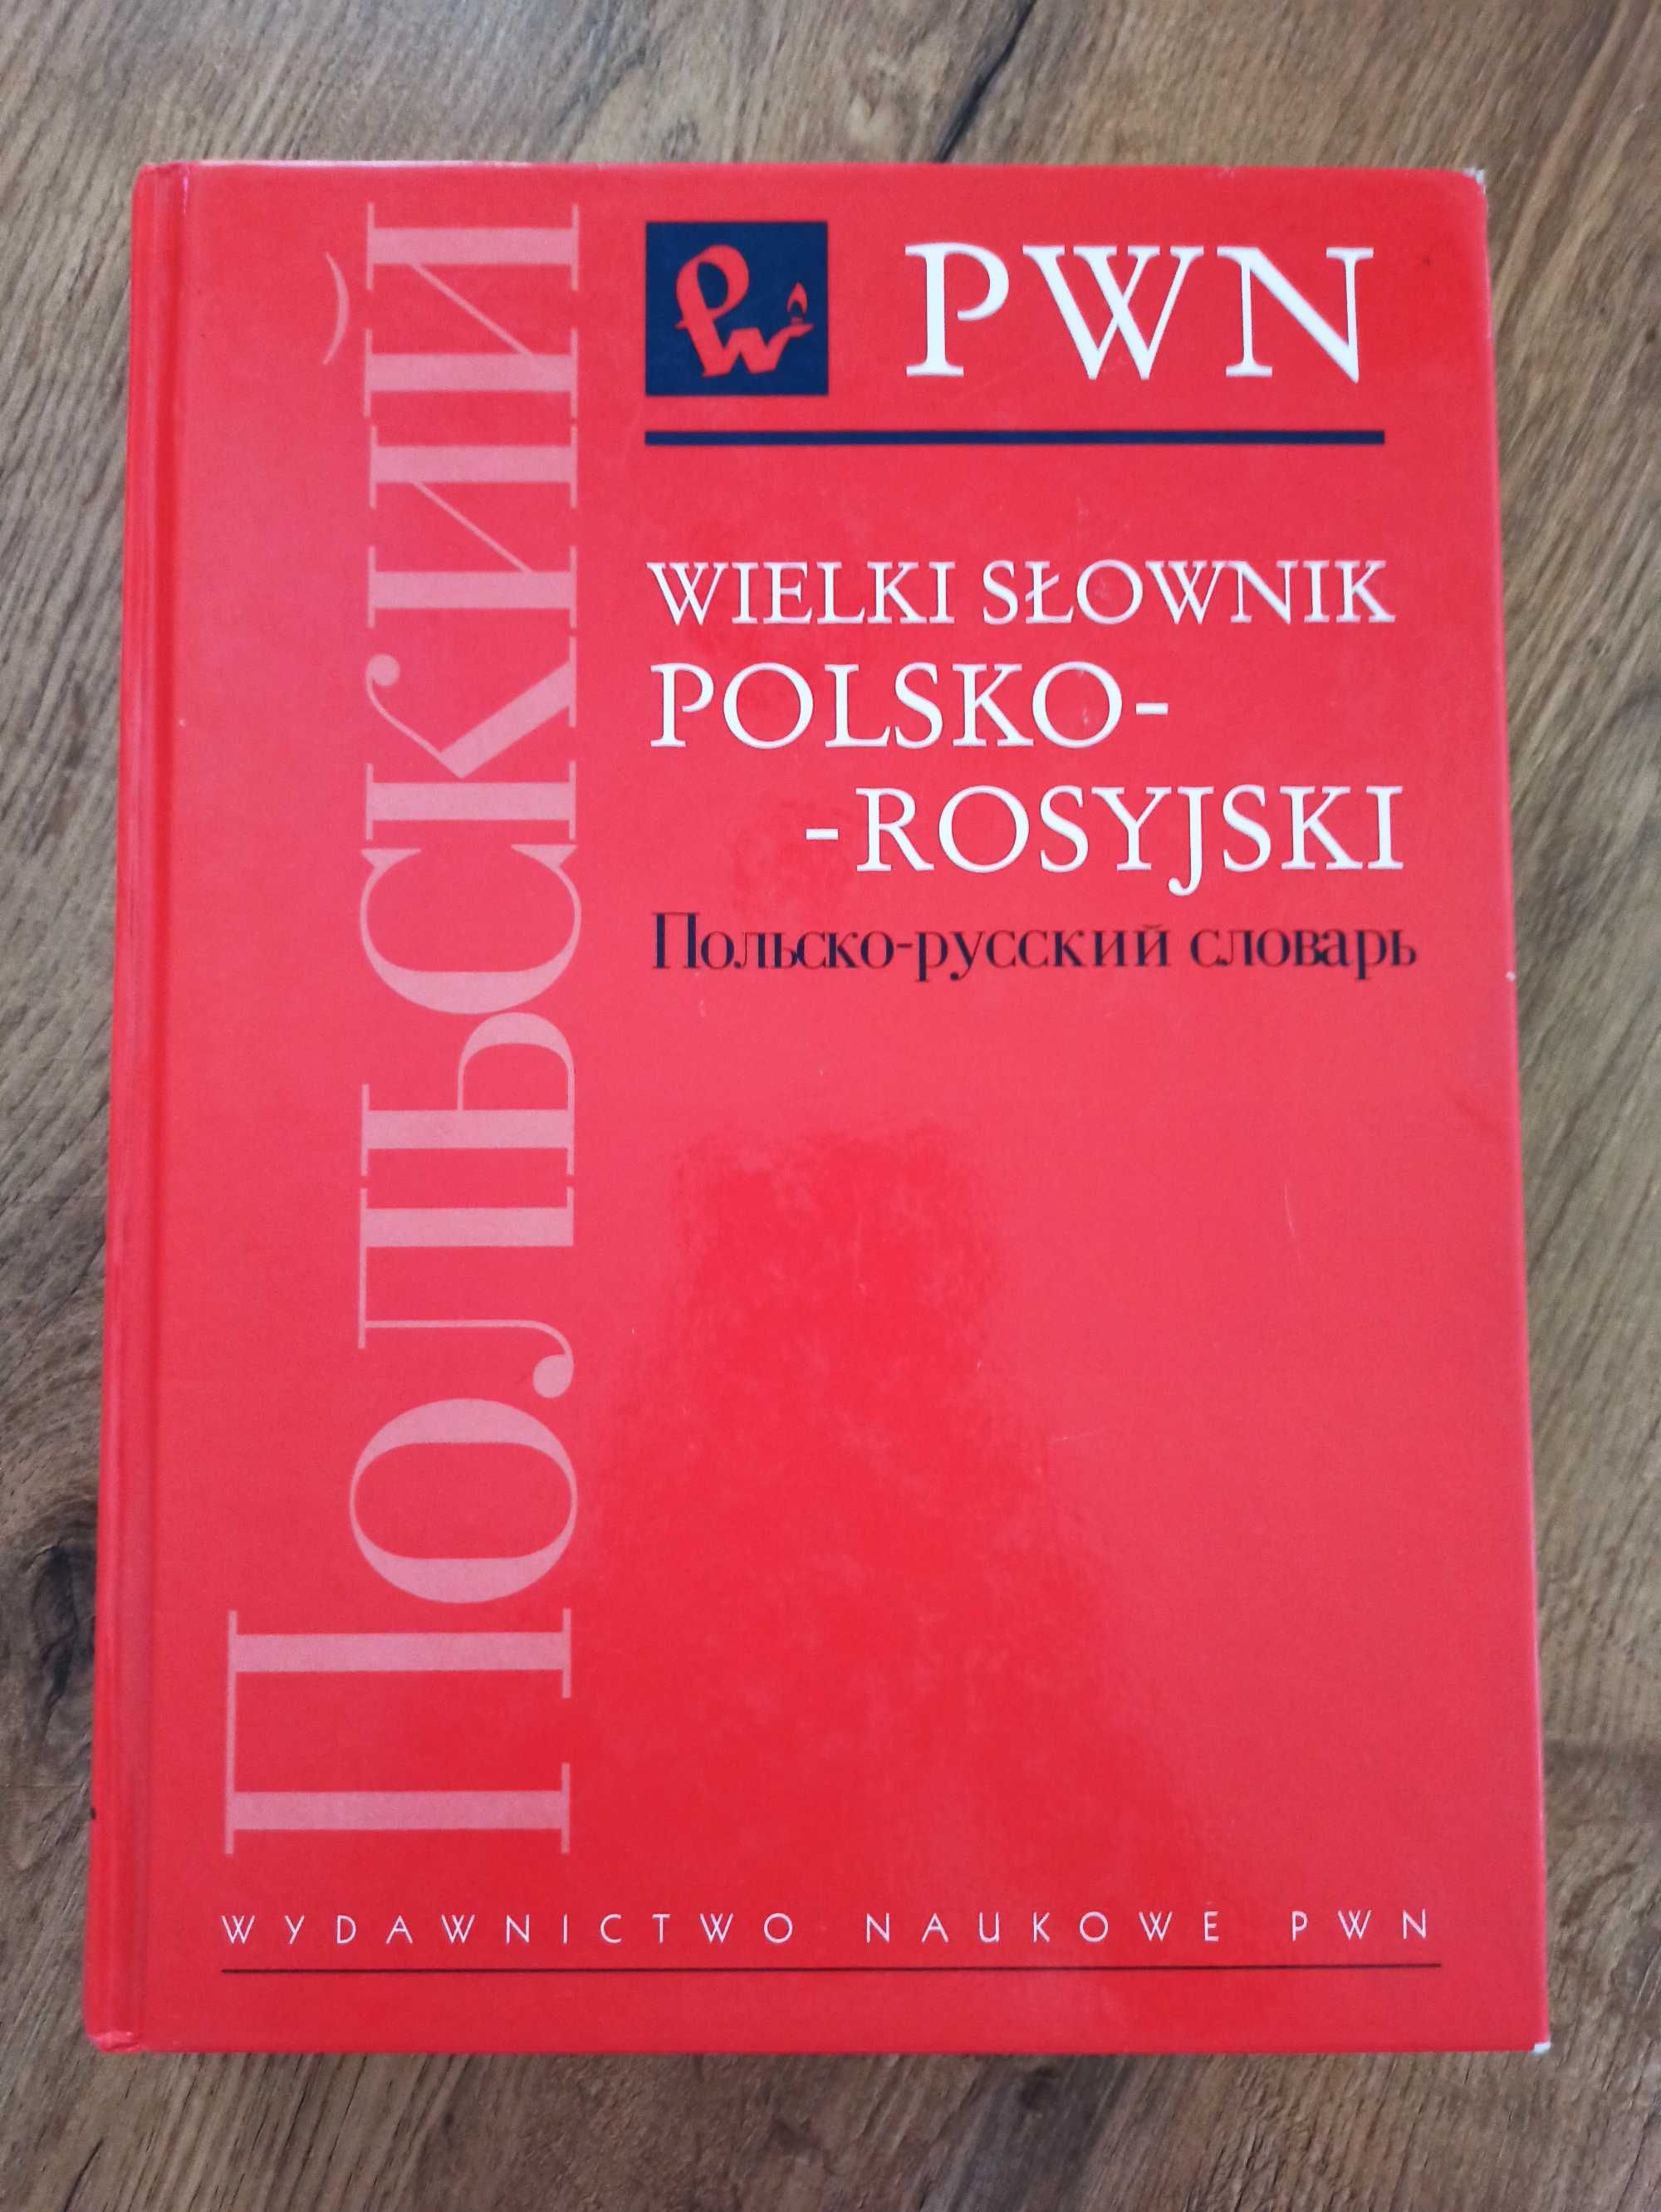 Wielki słownik polsko - rosyjski PWN